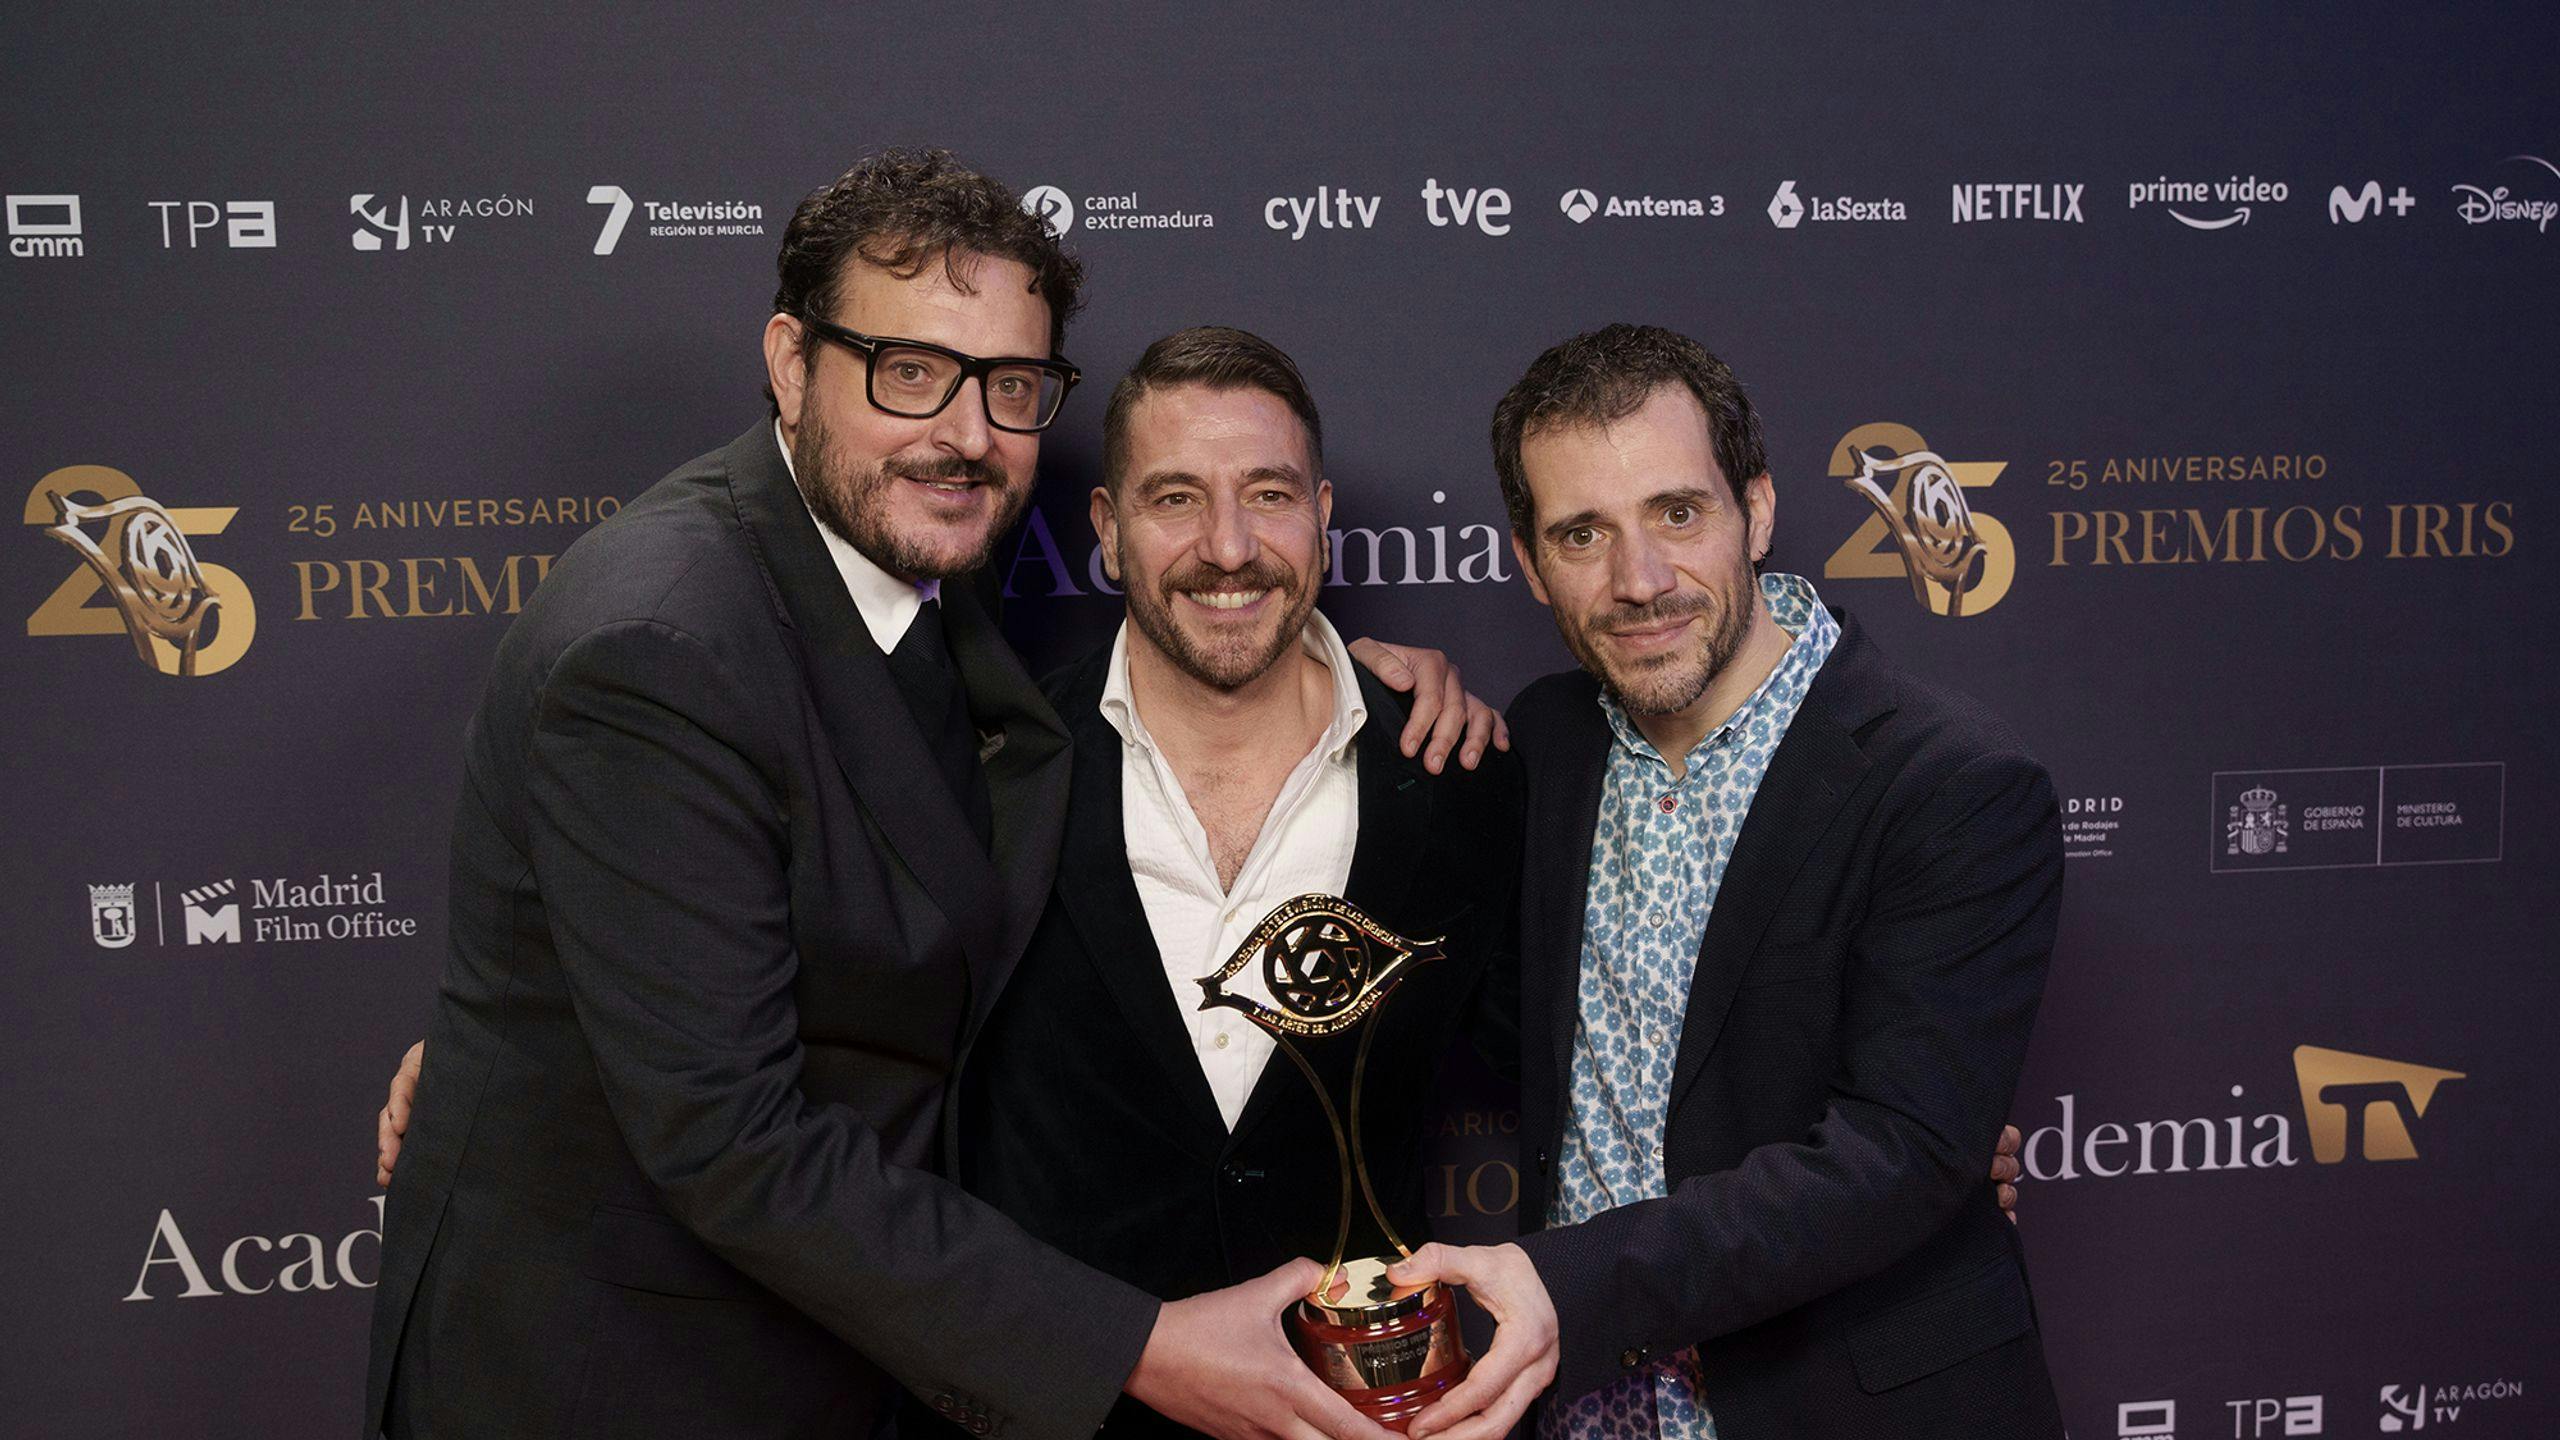 Fotografía del director y creador de 'La Unidad' posando con uno de los Premios Iris en la gala 25